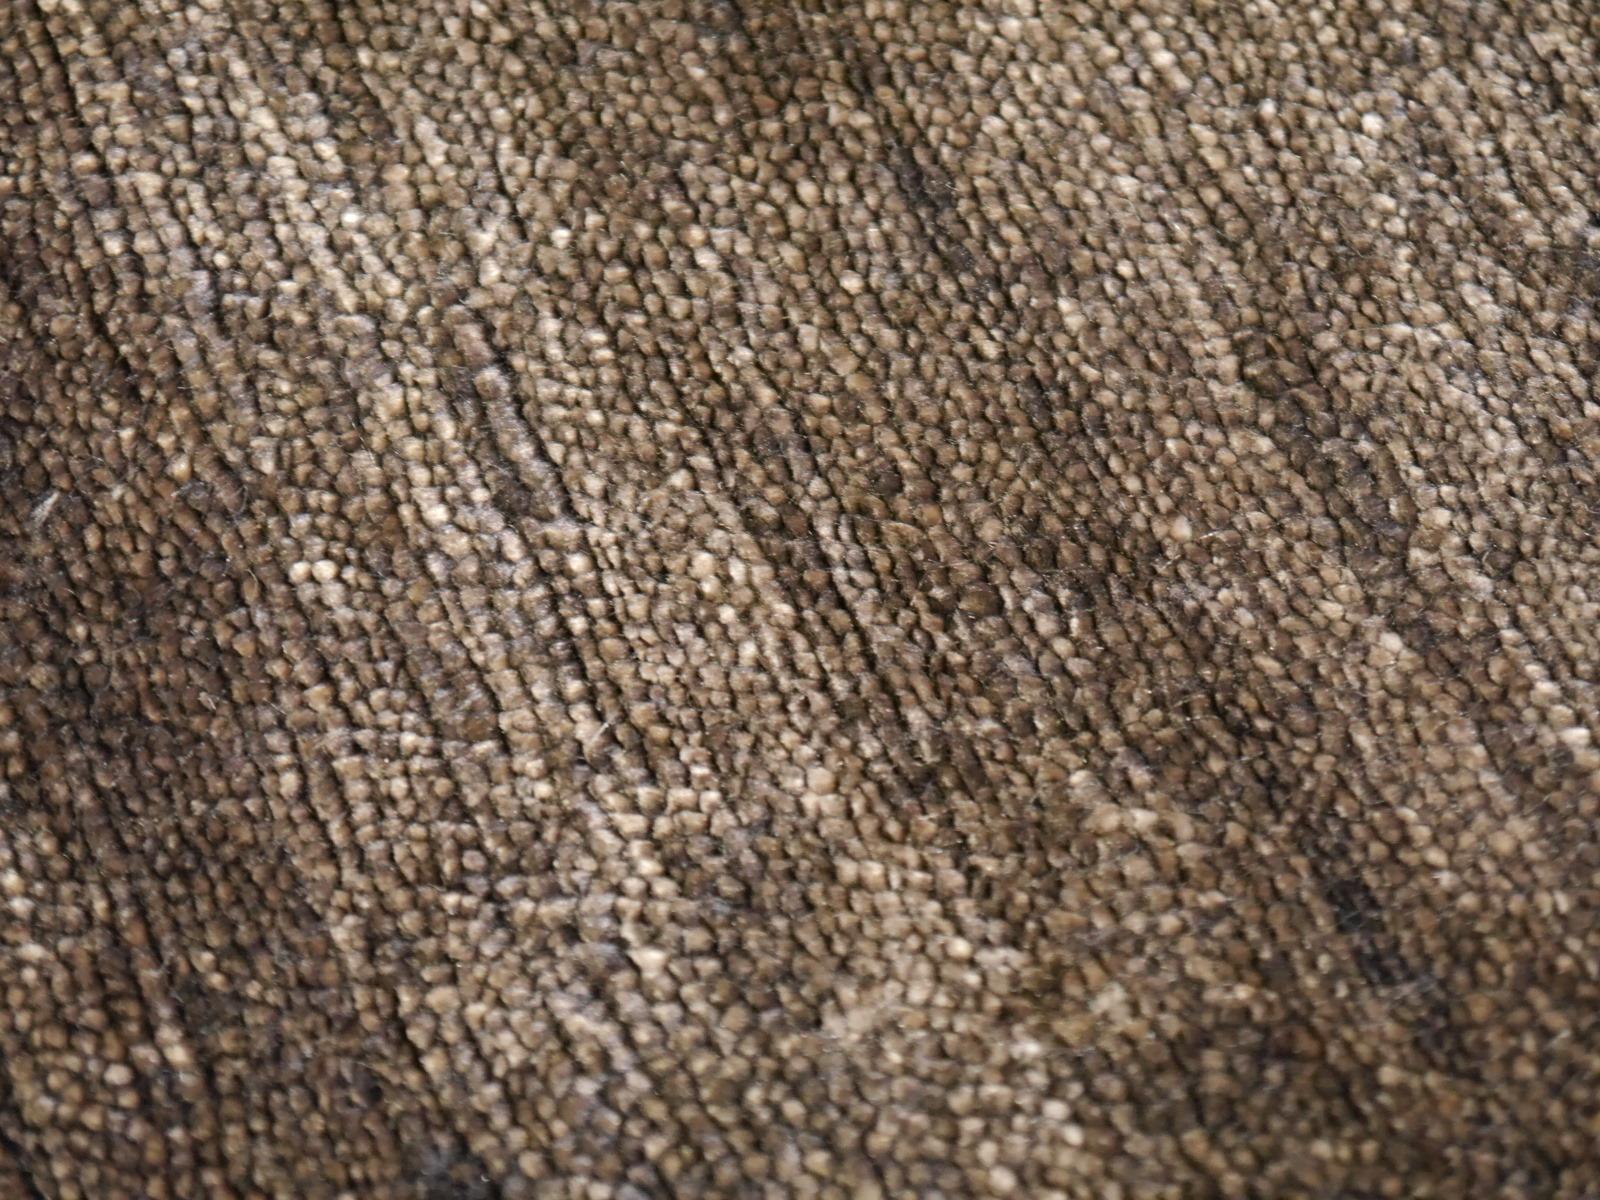 Perfect Plain Teppich Kollektion Farbe choco aus Bambusseide von Djoharian Design

Dieser moderne, einfarbige Teppich aus der Djoharian-Kollektion ist handgeknüpft in extrafeiner Qualität mit 100 Knoten pro Quadratzoll, alles aus handgesponnener